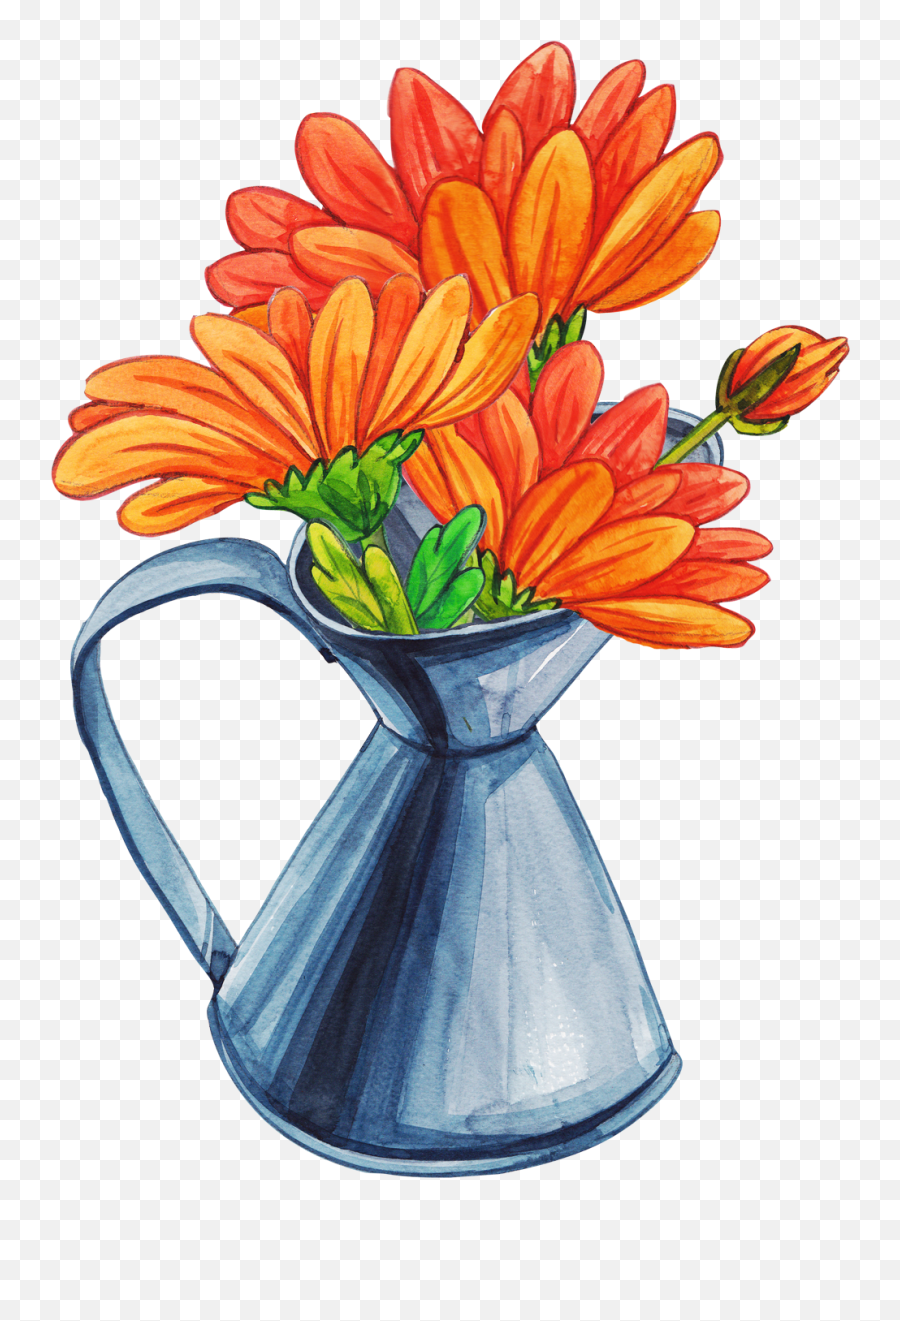 Flower Vase Cartoon Png - Flower Vase Cartoon Png,Flower Cartoon Png